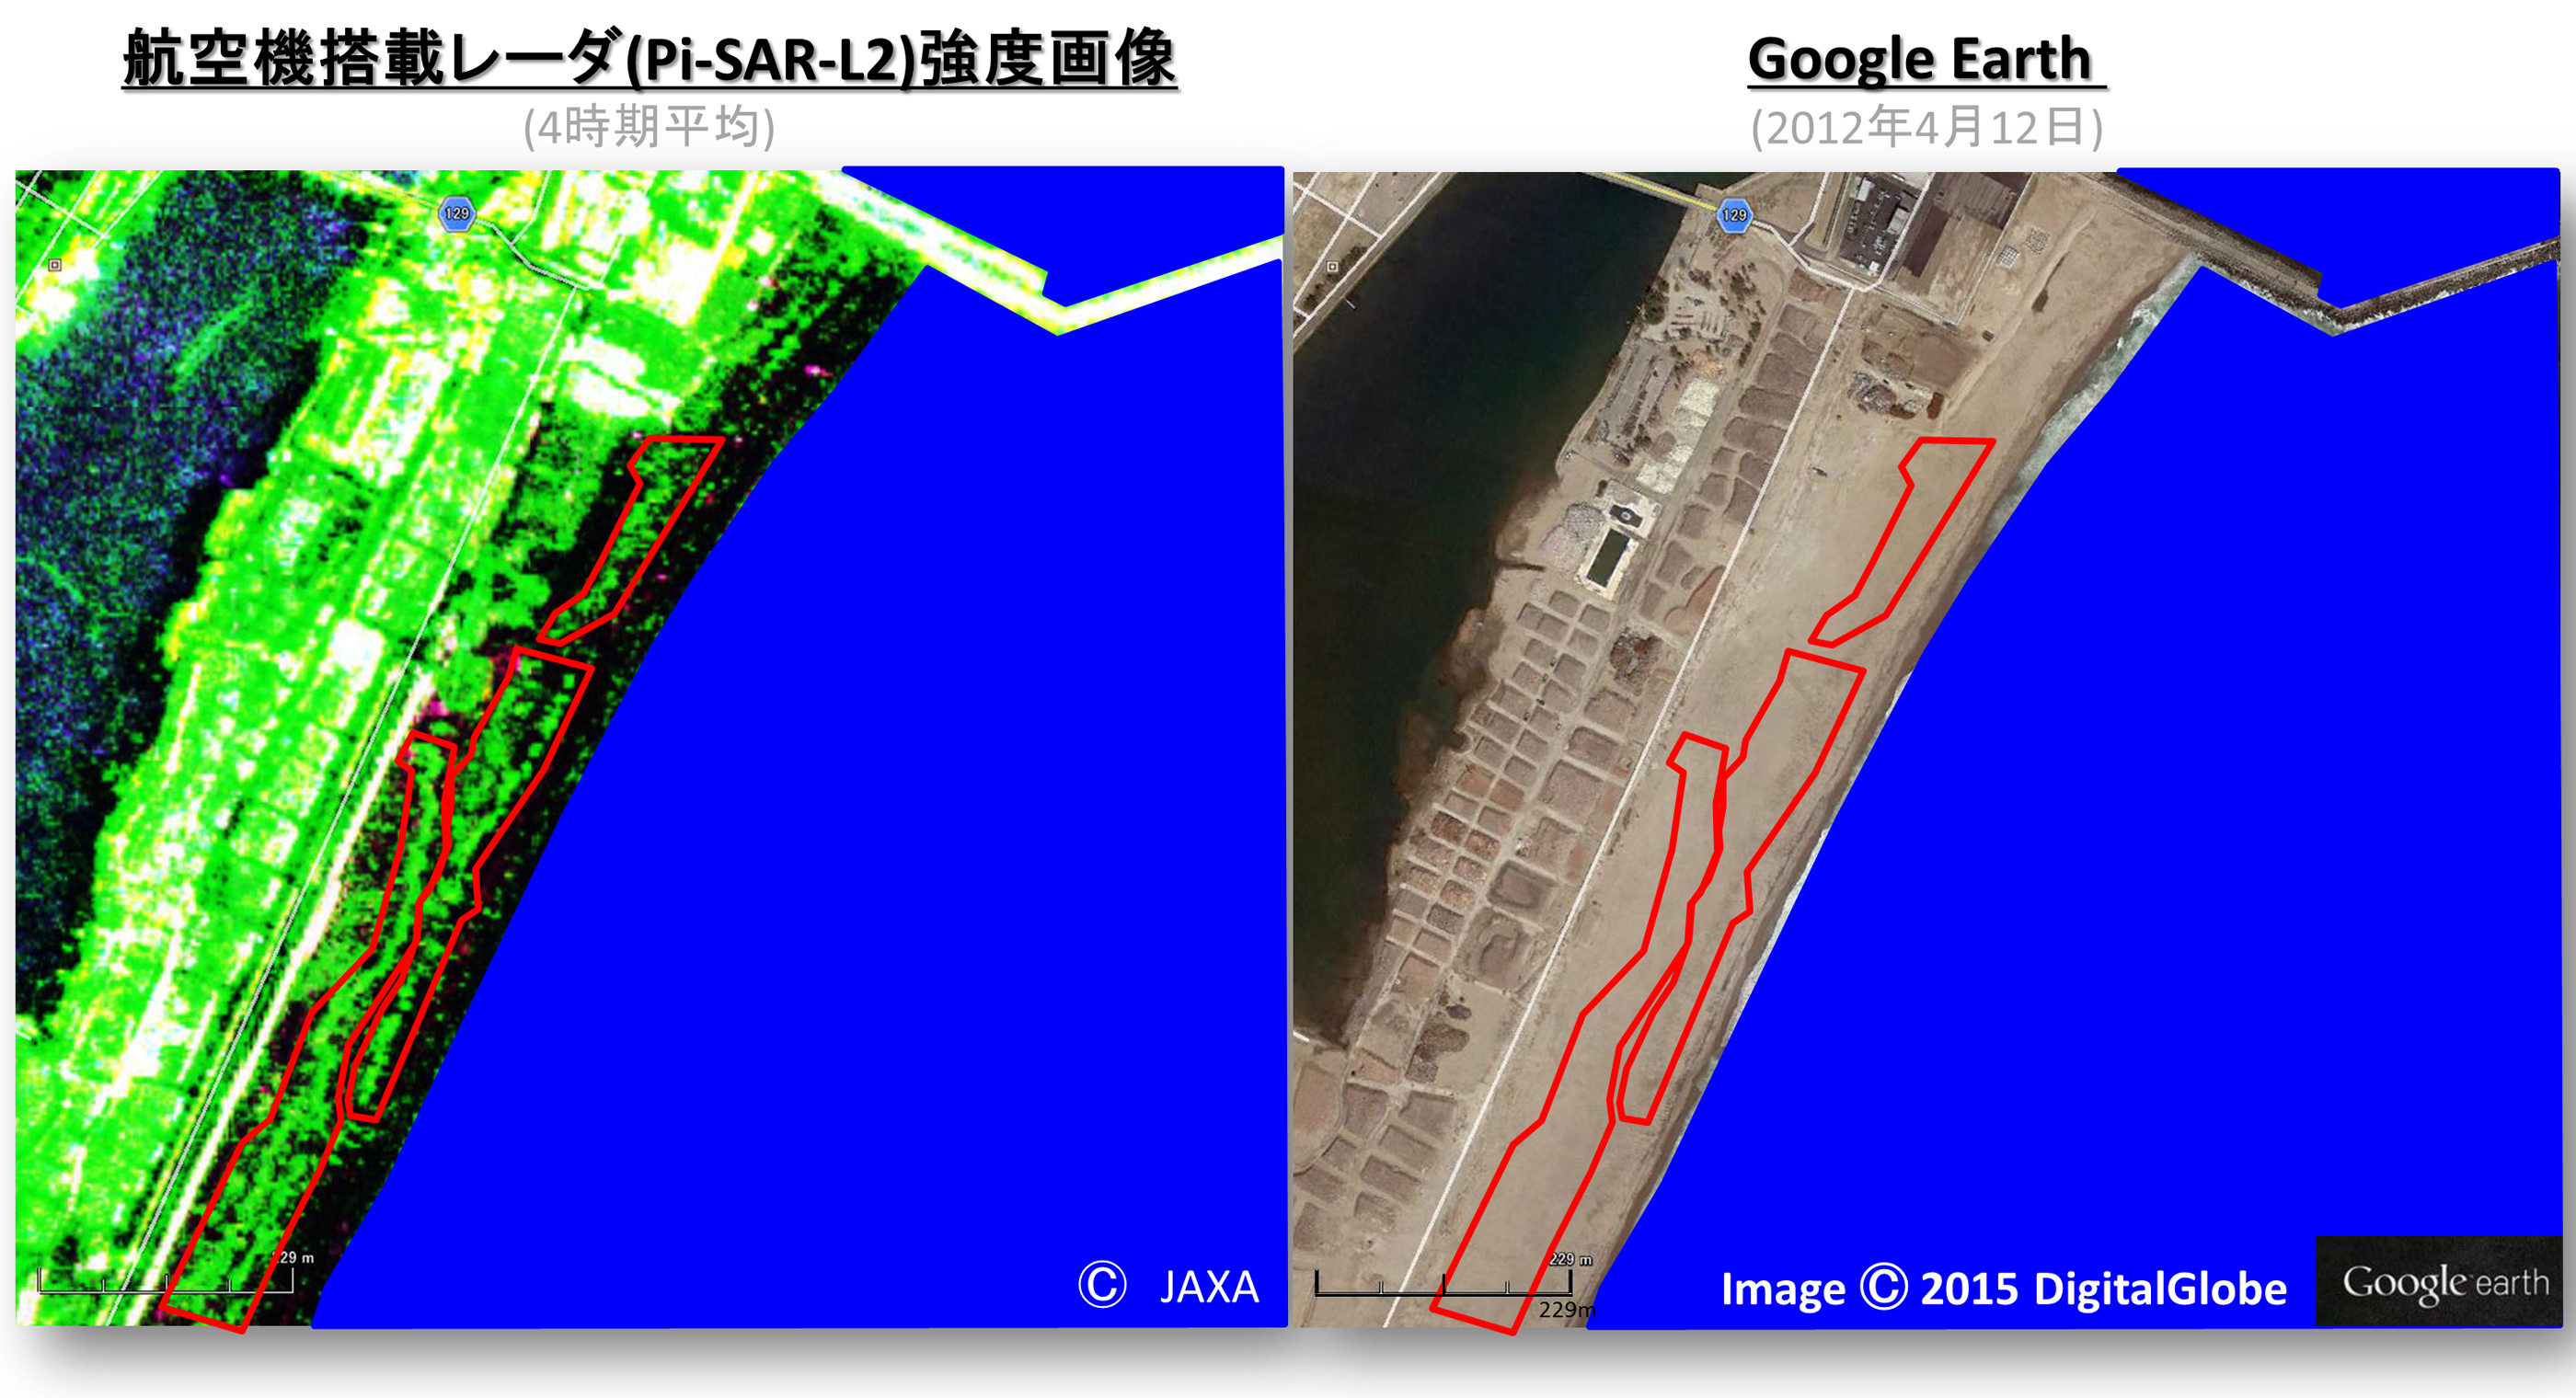 図1: 宮城県名取市閖上浜の航空機搭載合成開口レーダ (Pi-SAR-L2) 観測による強度画像（左）と光学画像（右: Google Earthより、©DigitalGlobe）